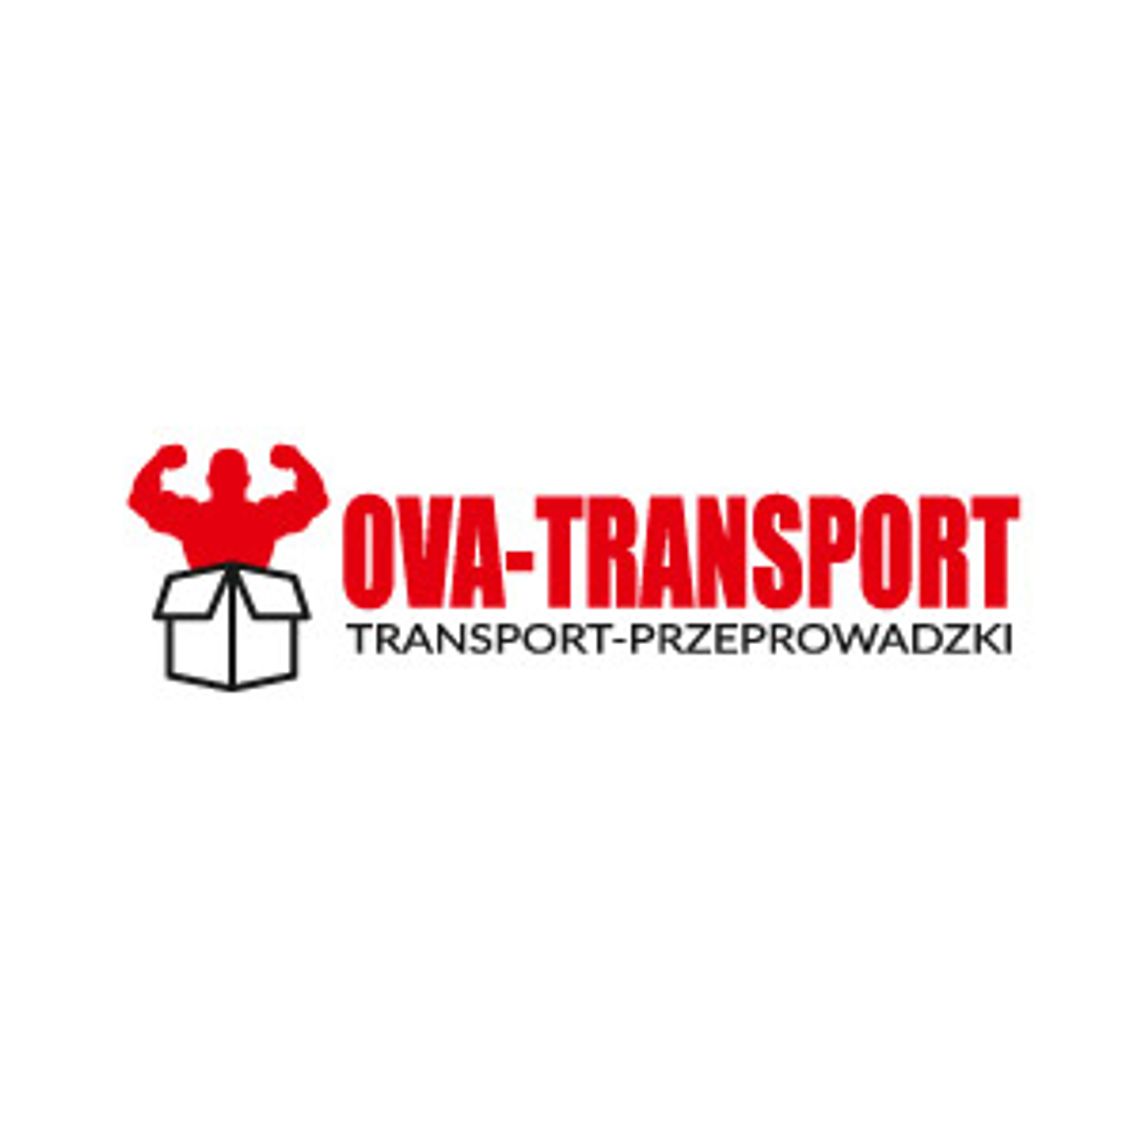 Przeprowadzki mieszkań i domu | OVA-TRANSPORT